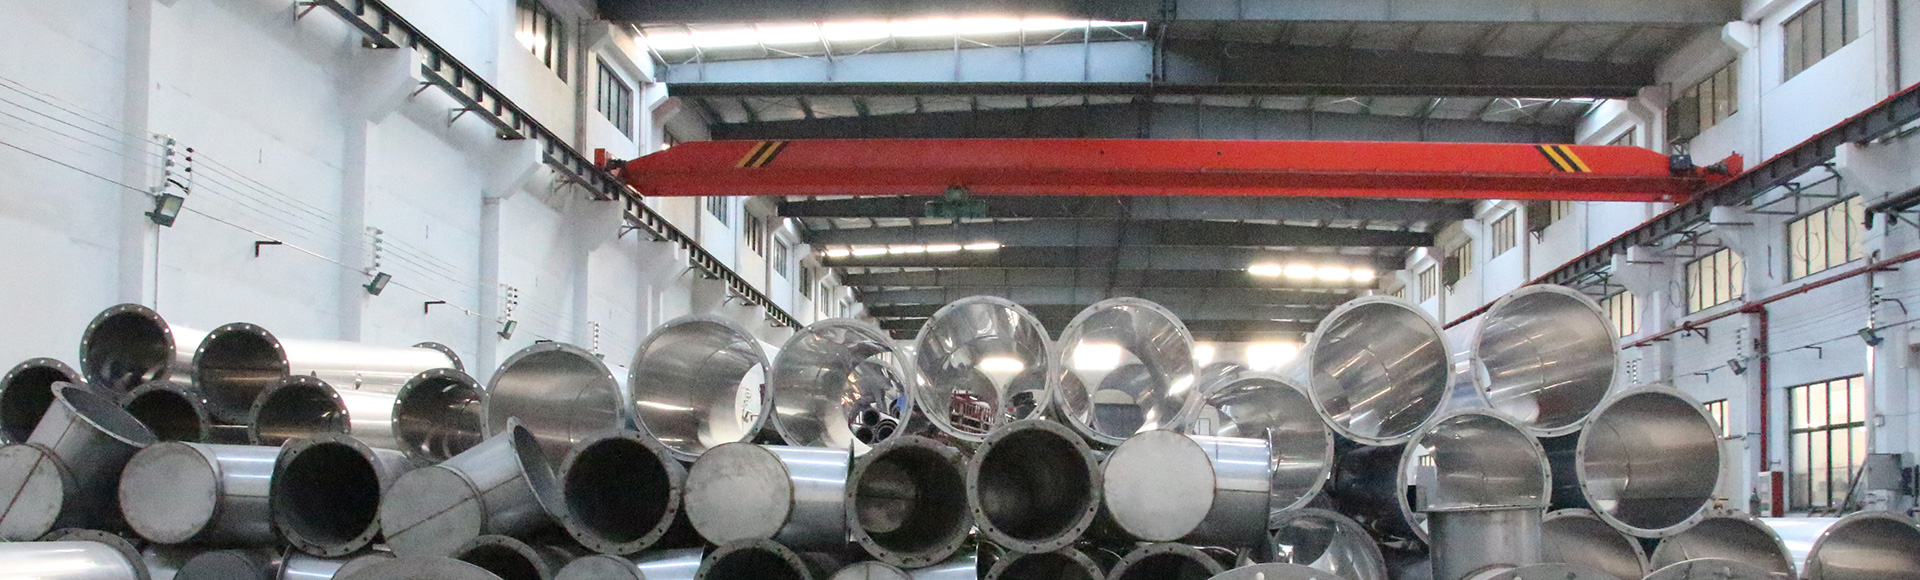 不銹鋼風管,不銹鋼焊接風管廠家-無錫雋發暖通設備有限公司